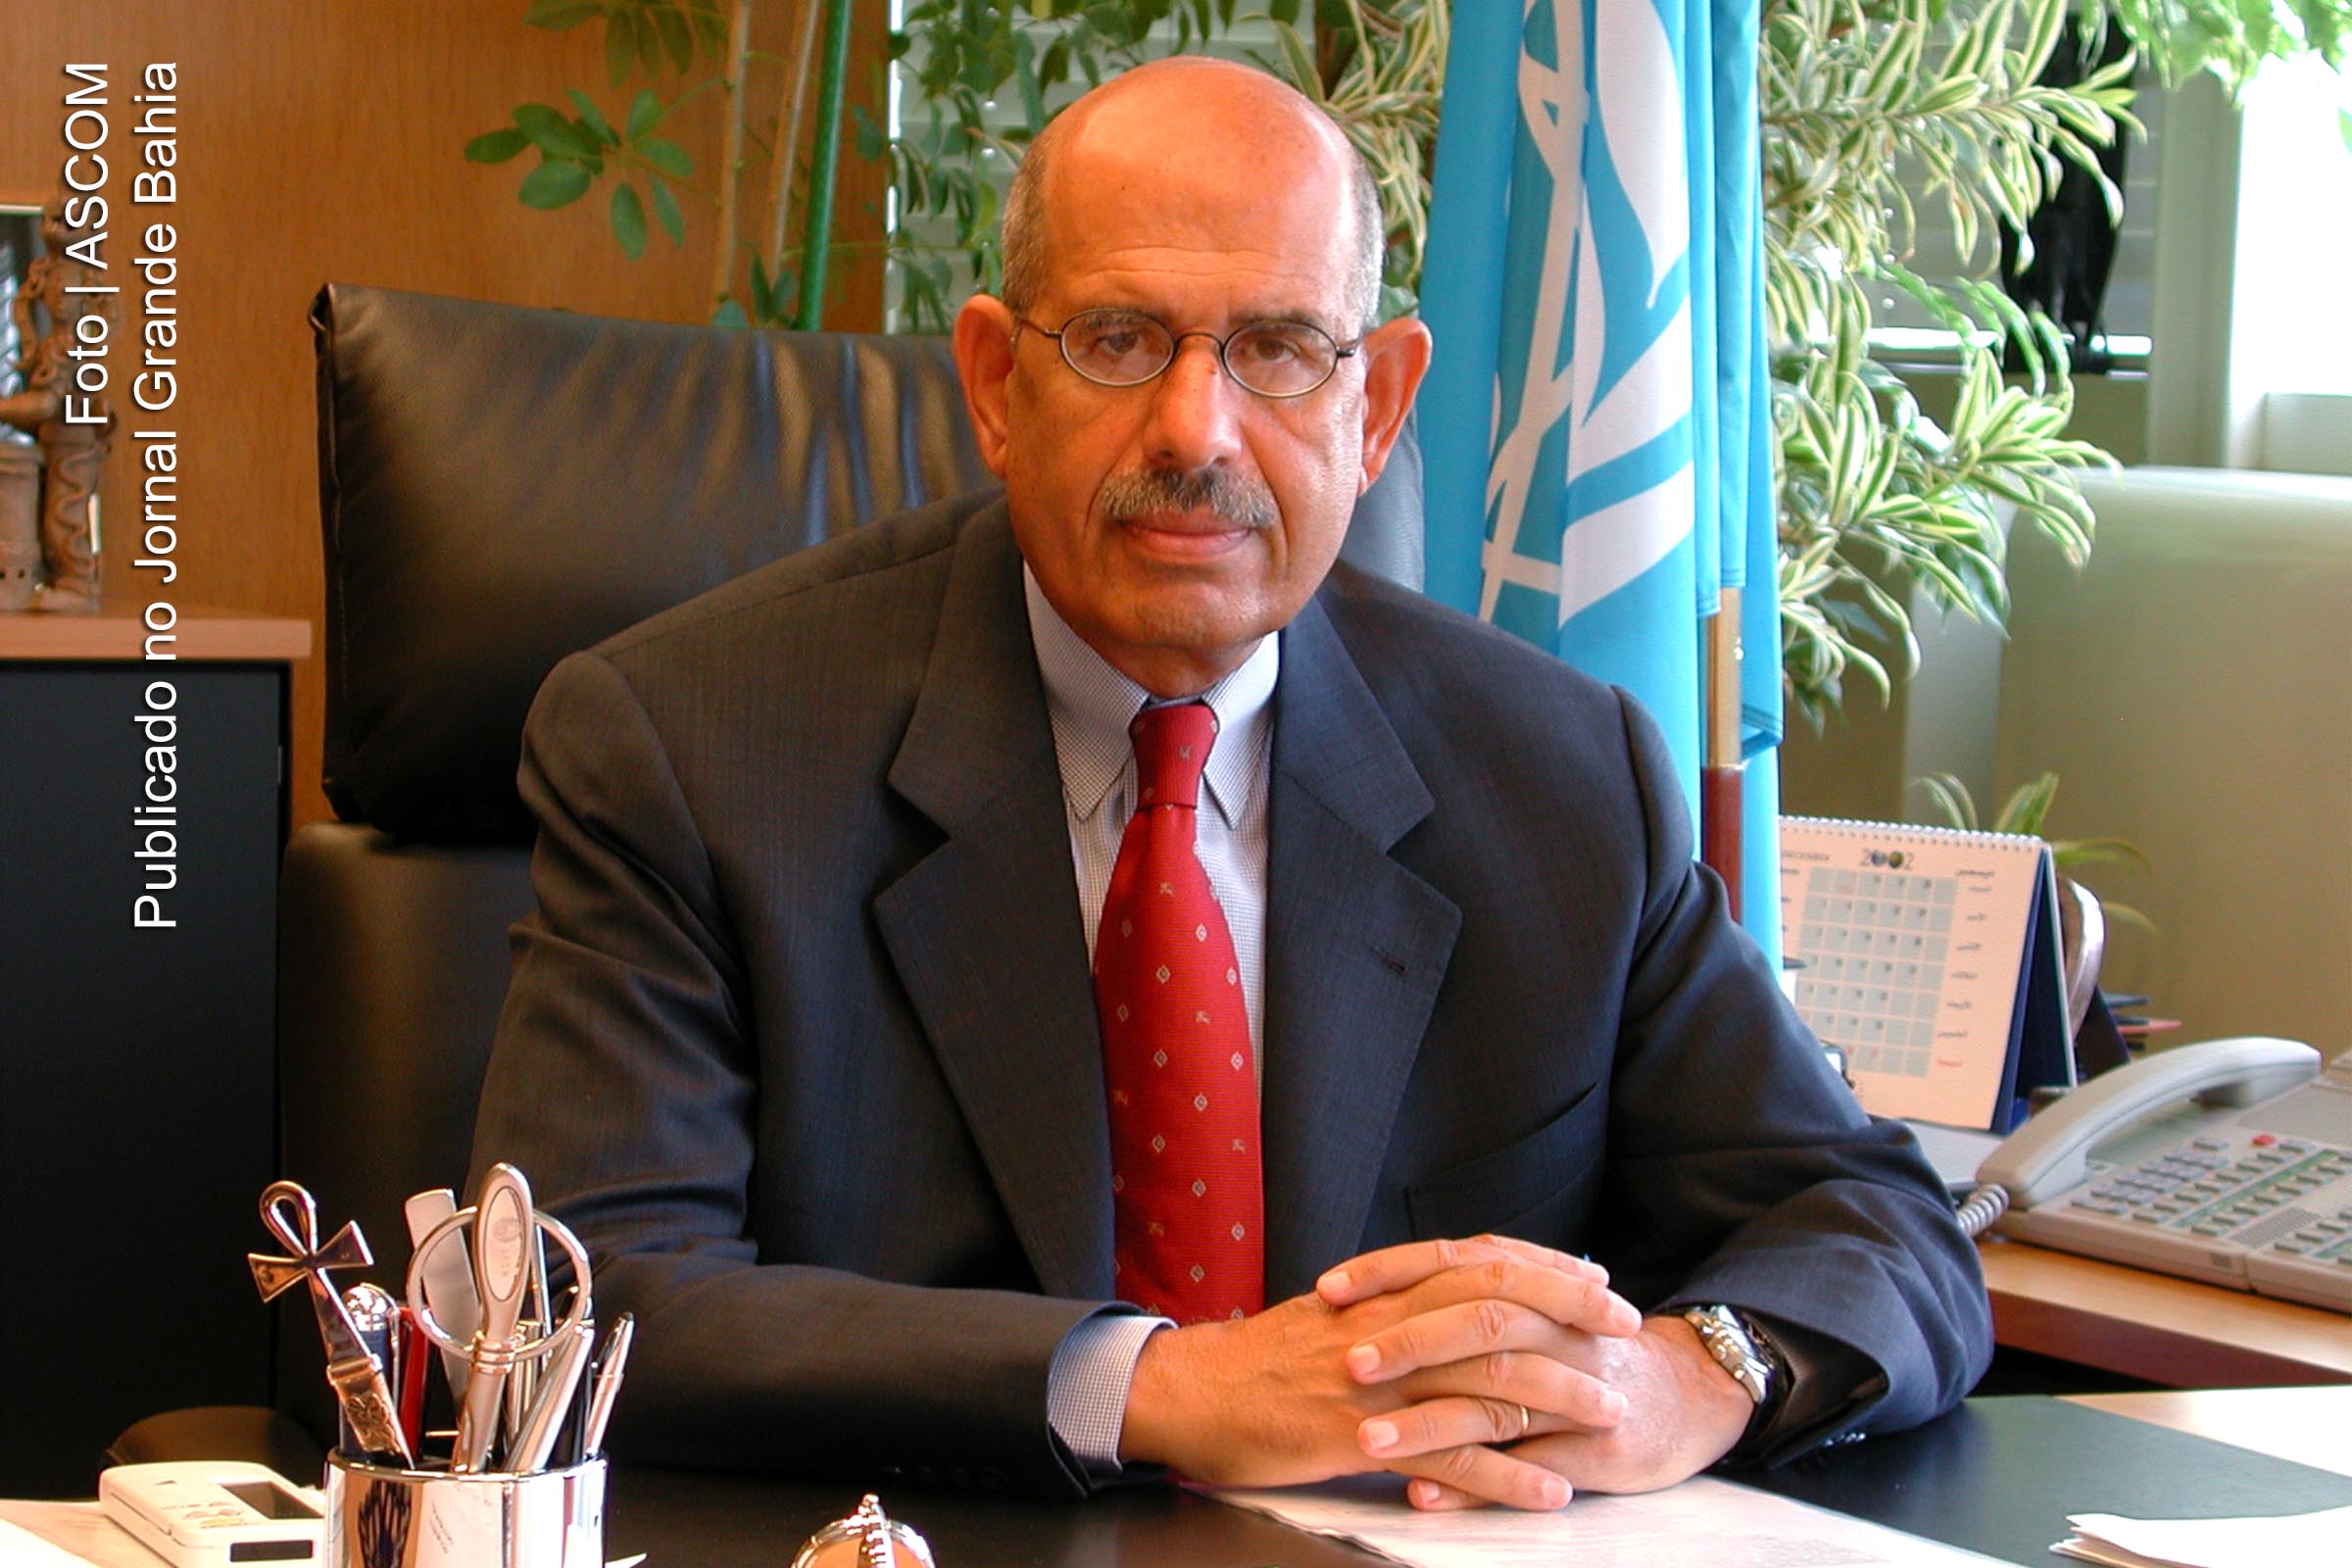 Mohamed ElBaradei é um diplomata egípcio, antigo diretor-geral da Agência Internacional de Energia Atómica. Foi premiado com o Nobel da Paz de 2005, juntamente com a Agência Internacional de Energia Atômica.